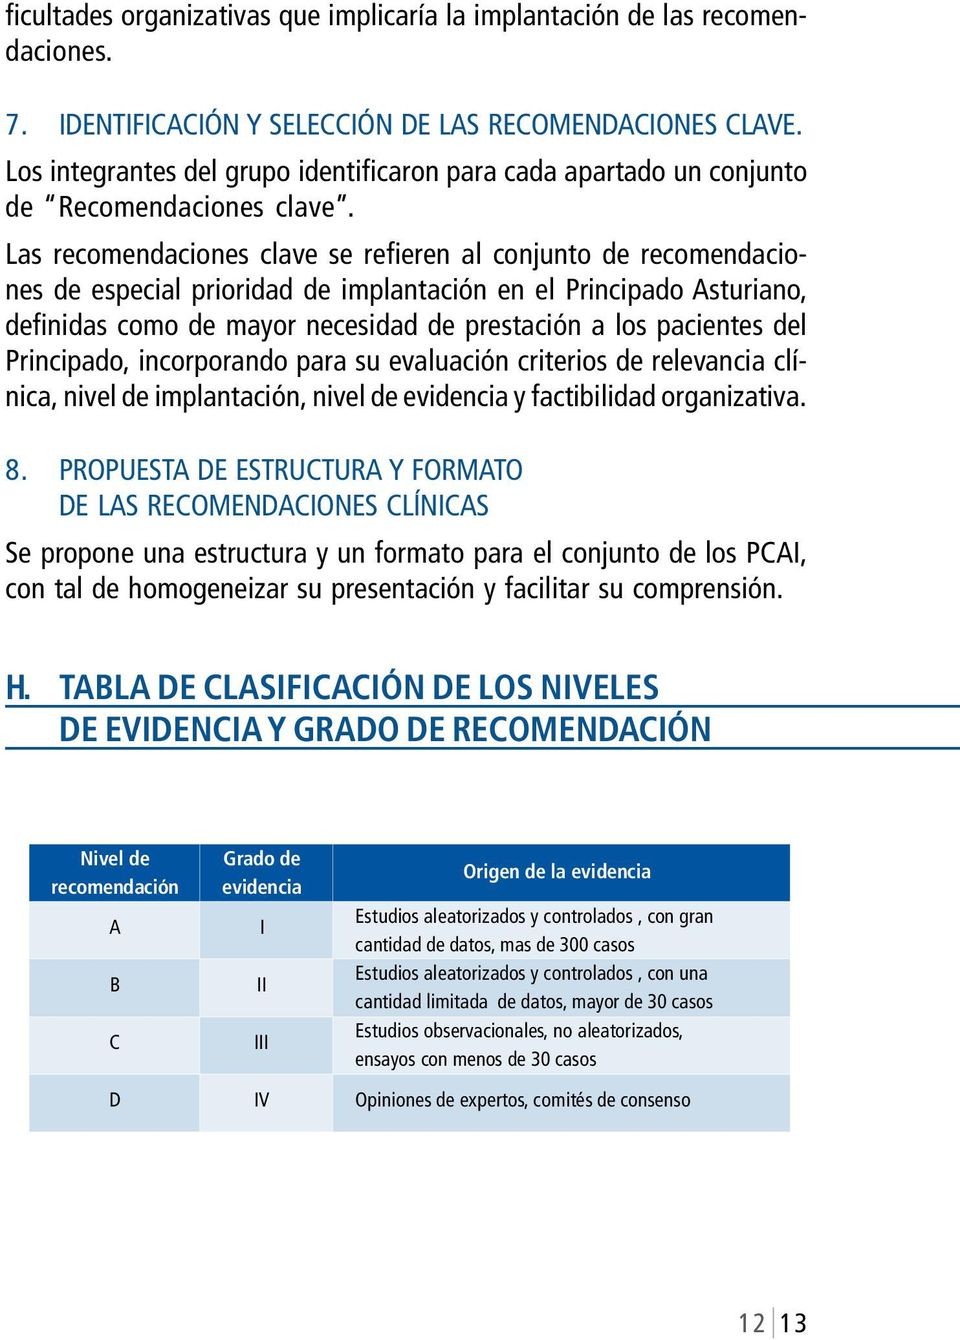 Las recomendaciones clave se refieren al conjunto de recomendaciones de especial prioridad de implantación en el Principado Asturiano, definidas como de mayor necesidad de prestación a los pacientes